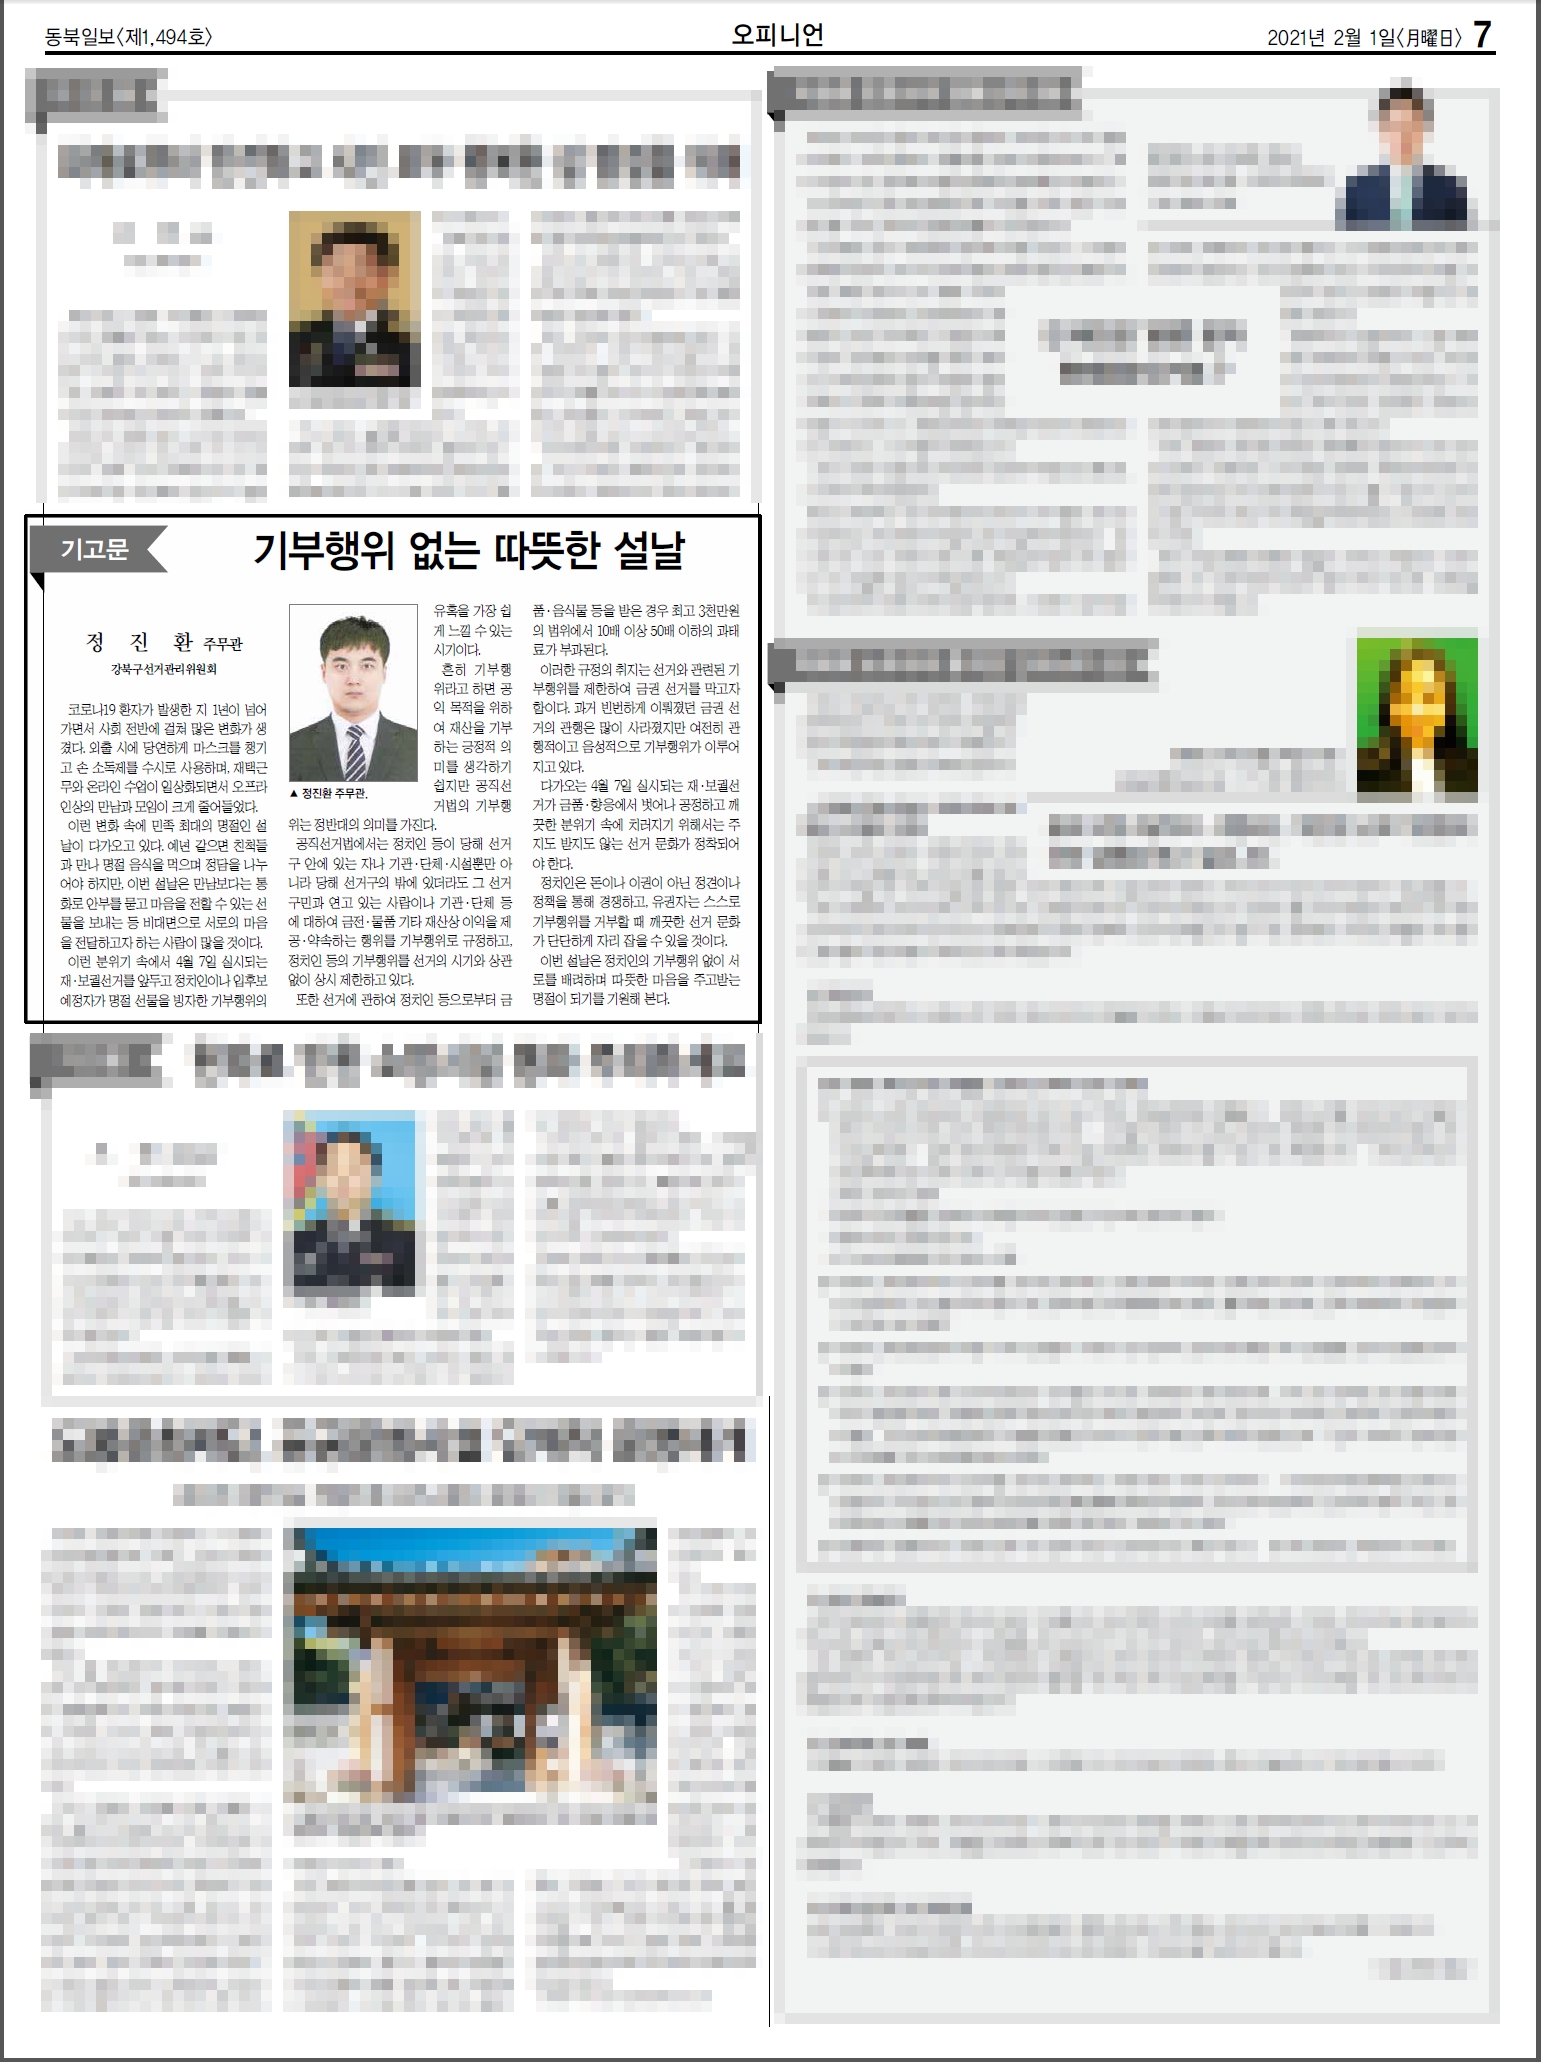 강북구선거관리위원회는 「기부행위 없는 따뜻한 설날」 기고문 동북신문에 게재하였습니다.